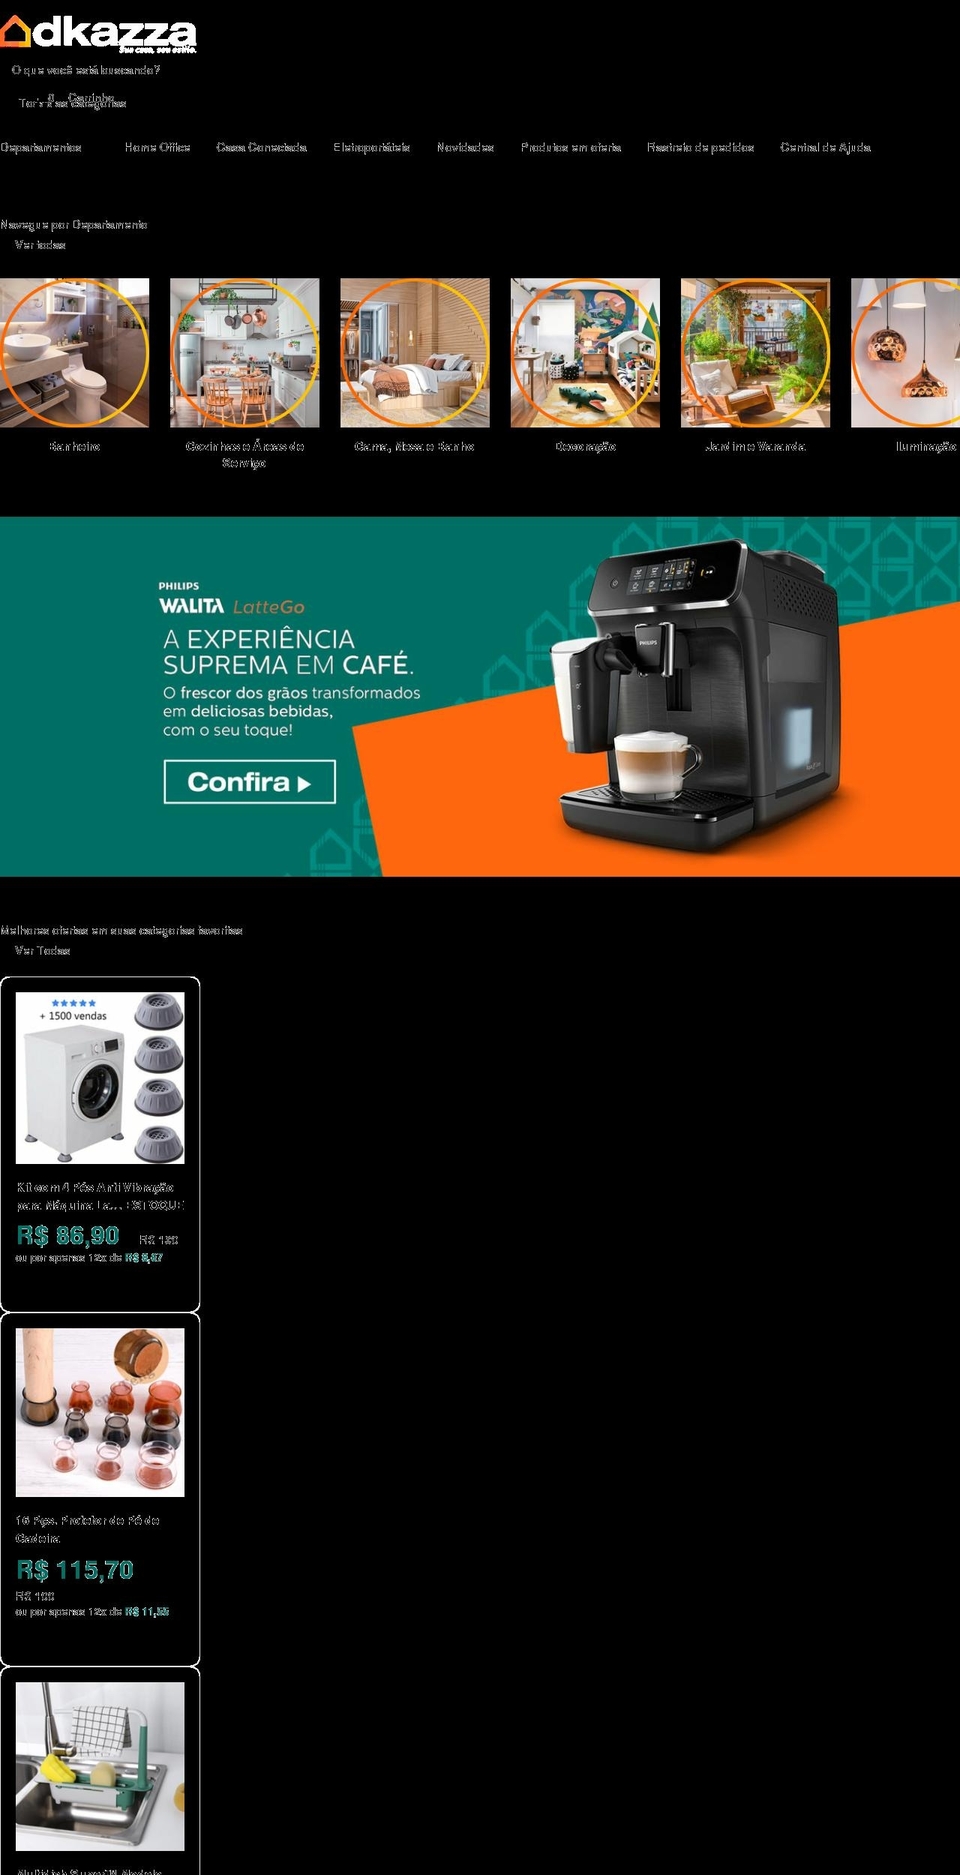 dkazza.com.br shopify website screenshot